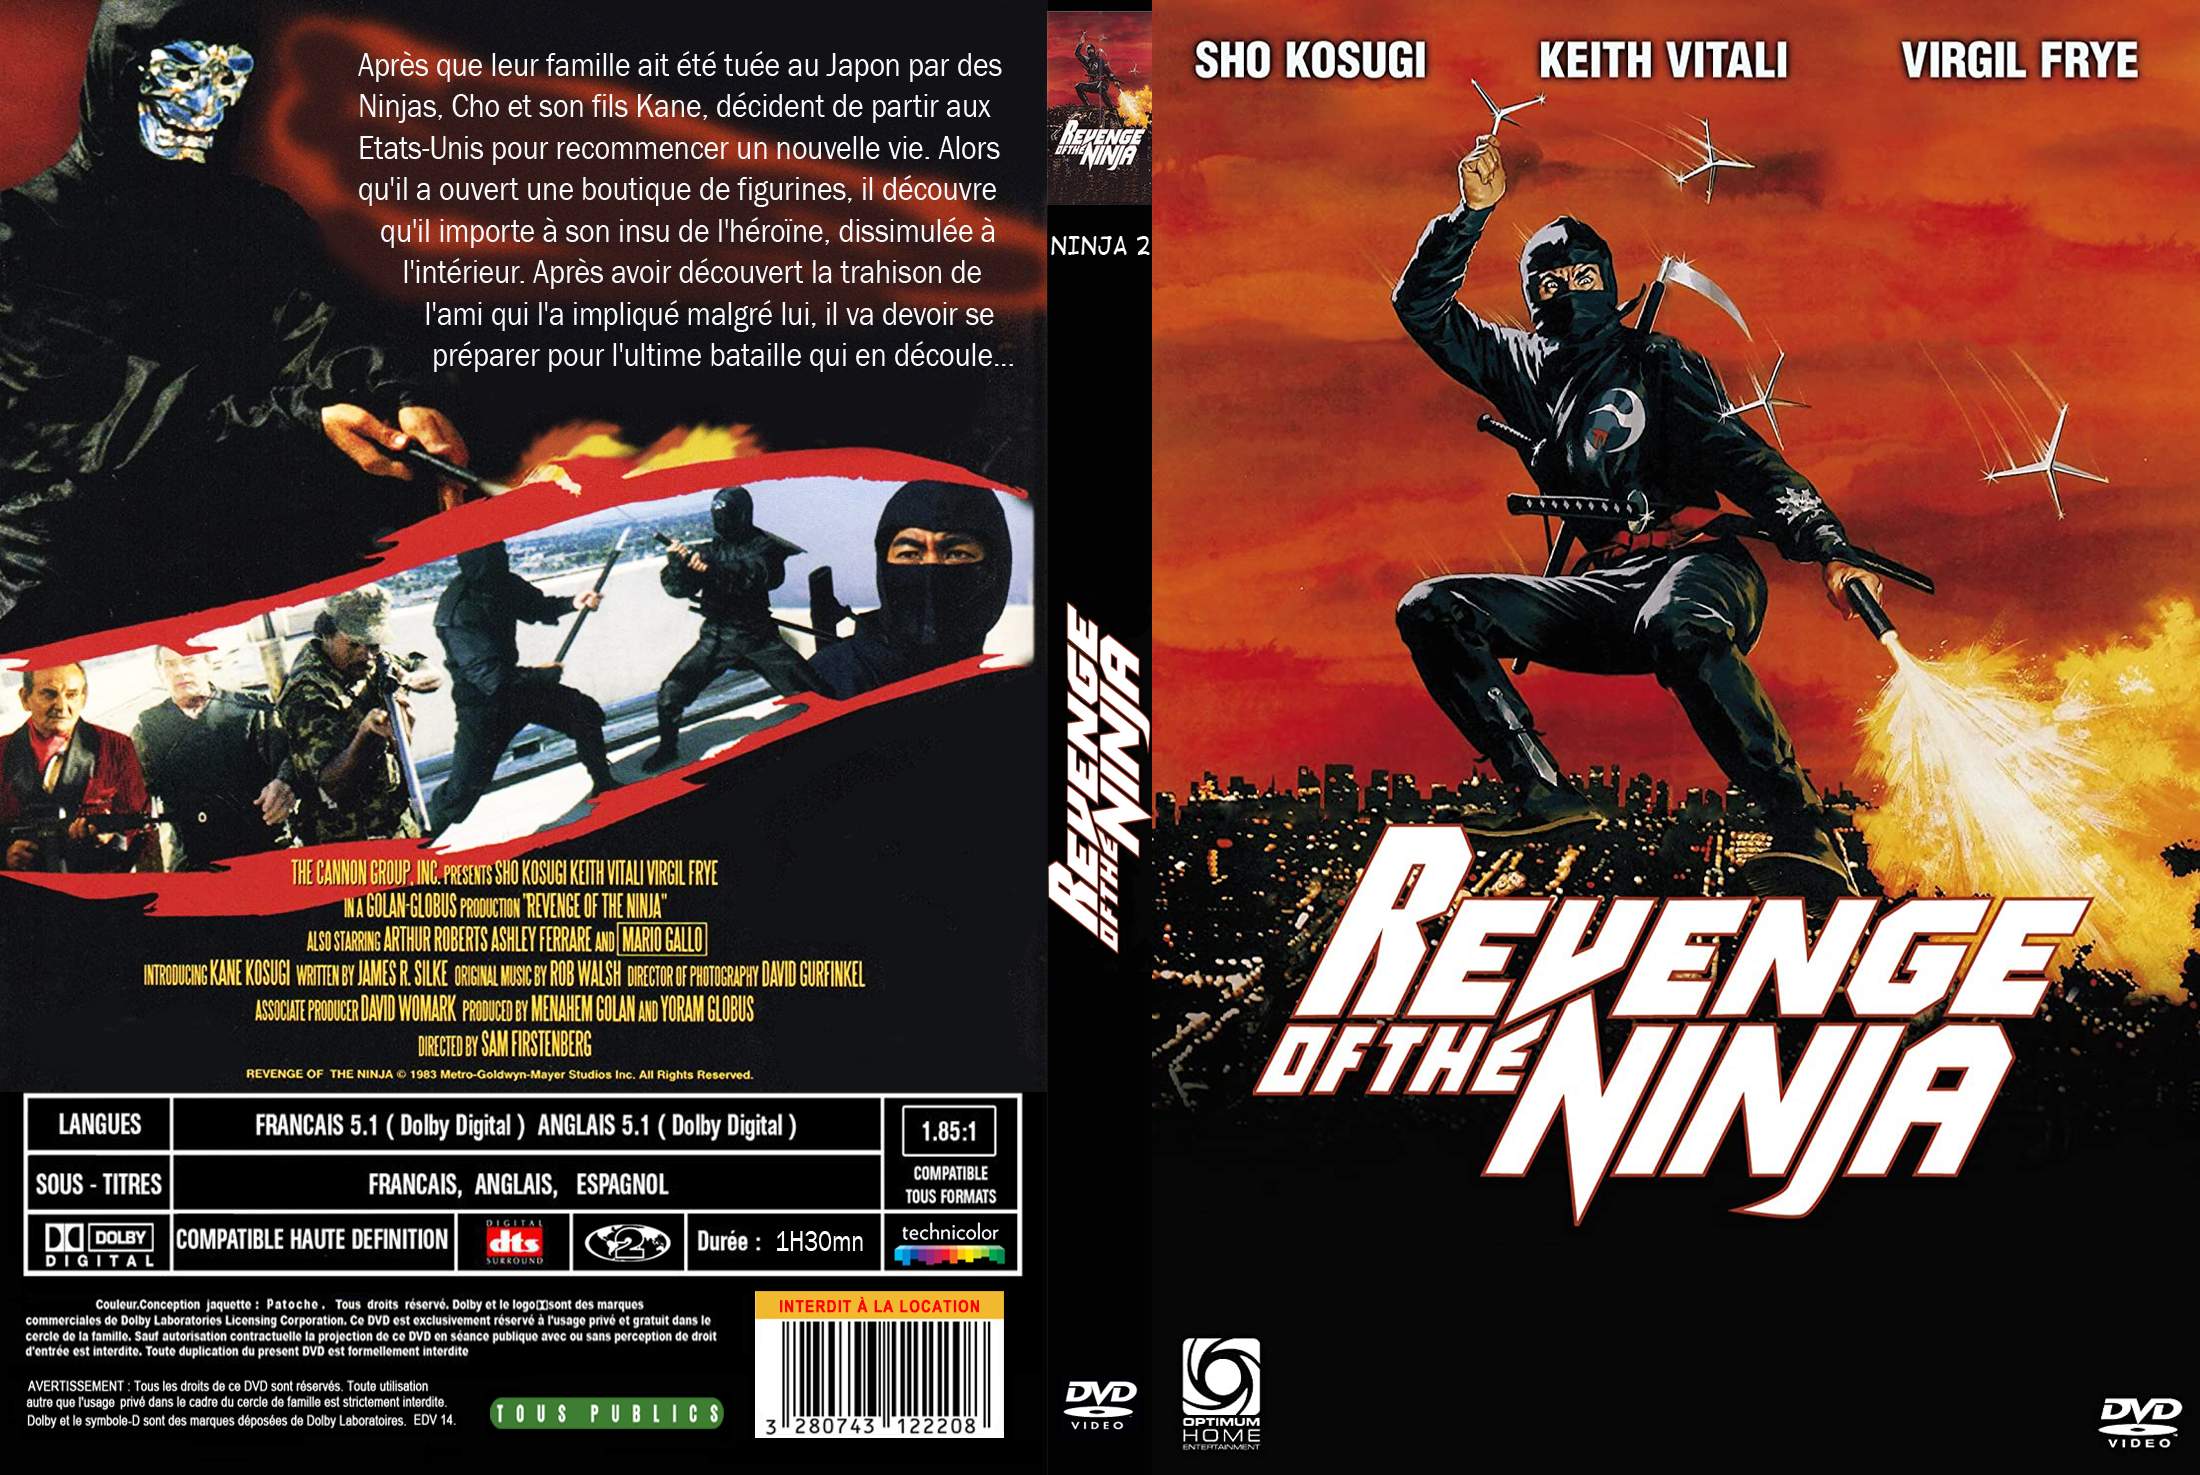 Jaquette DVD Revenge of the ninja custom